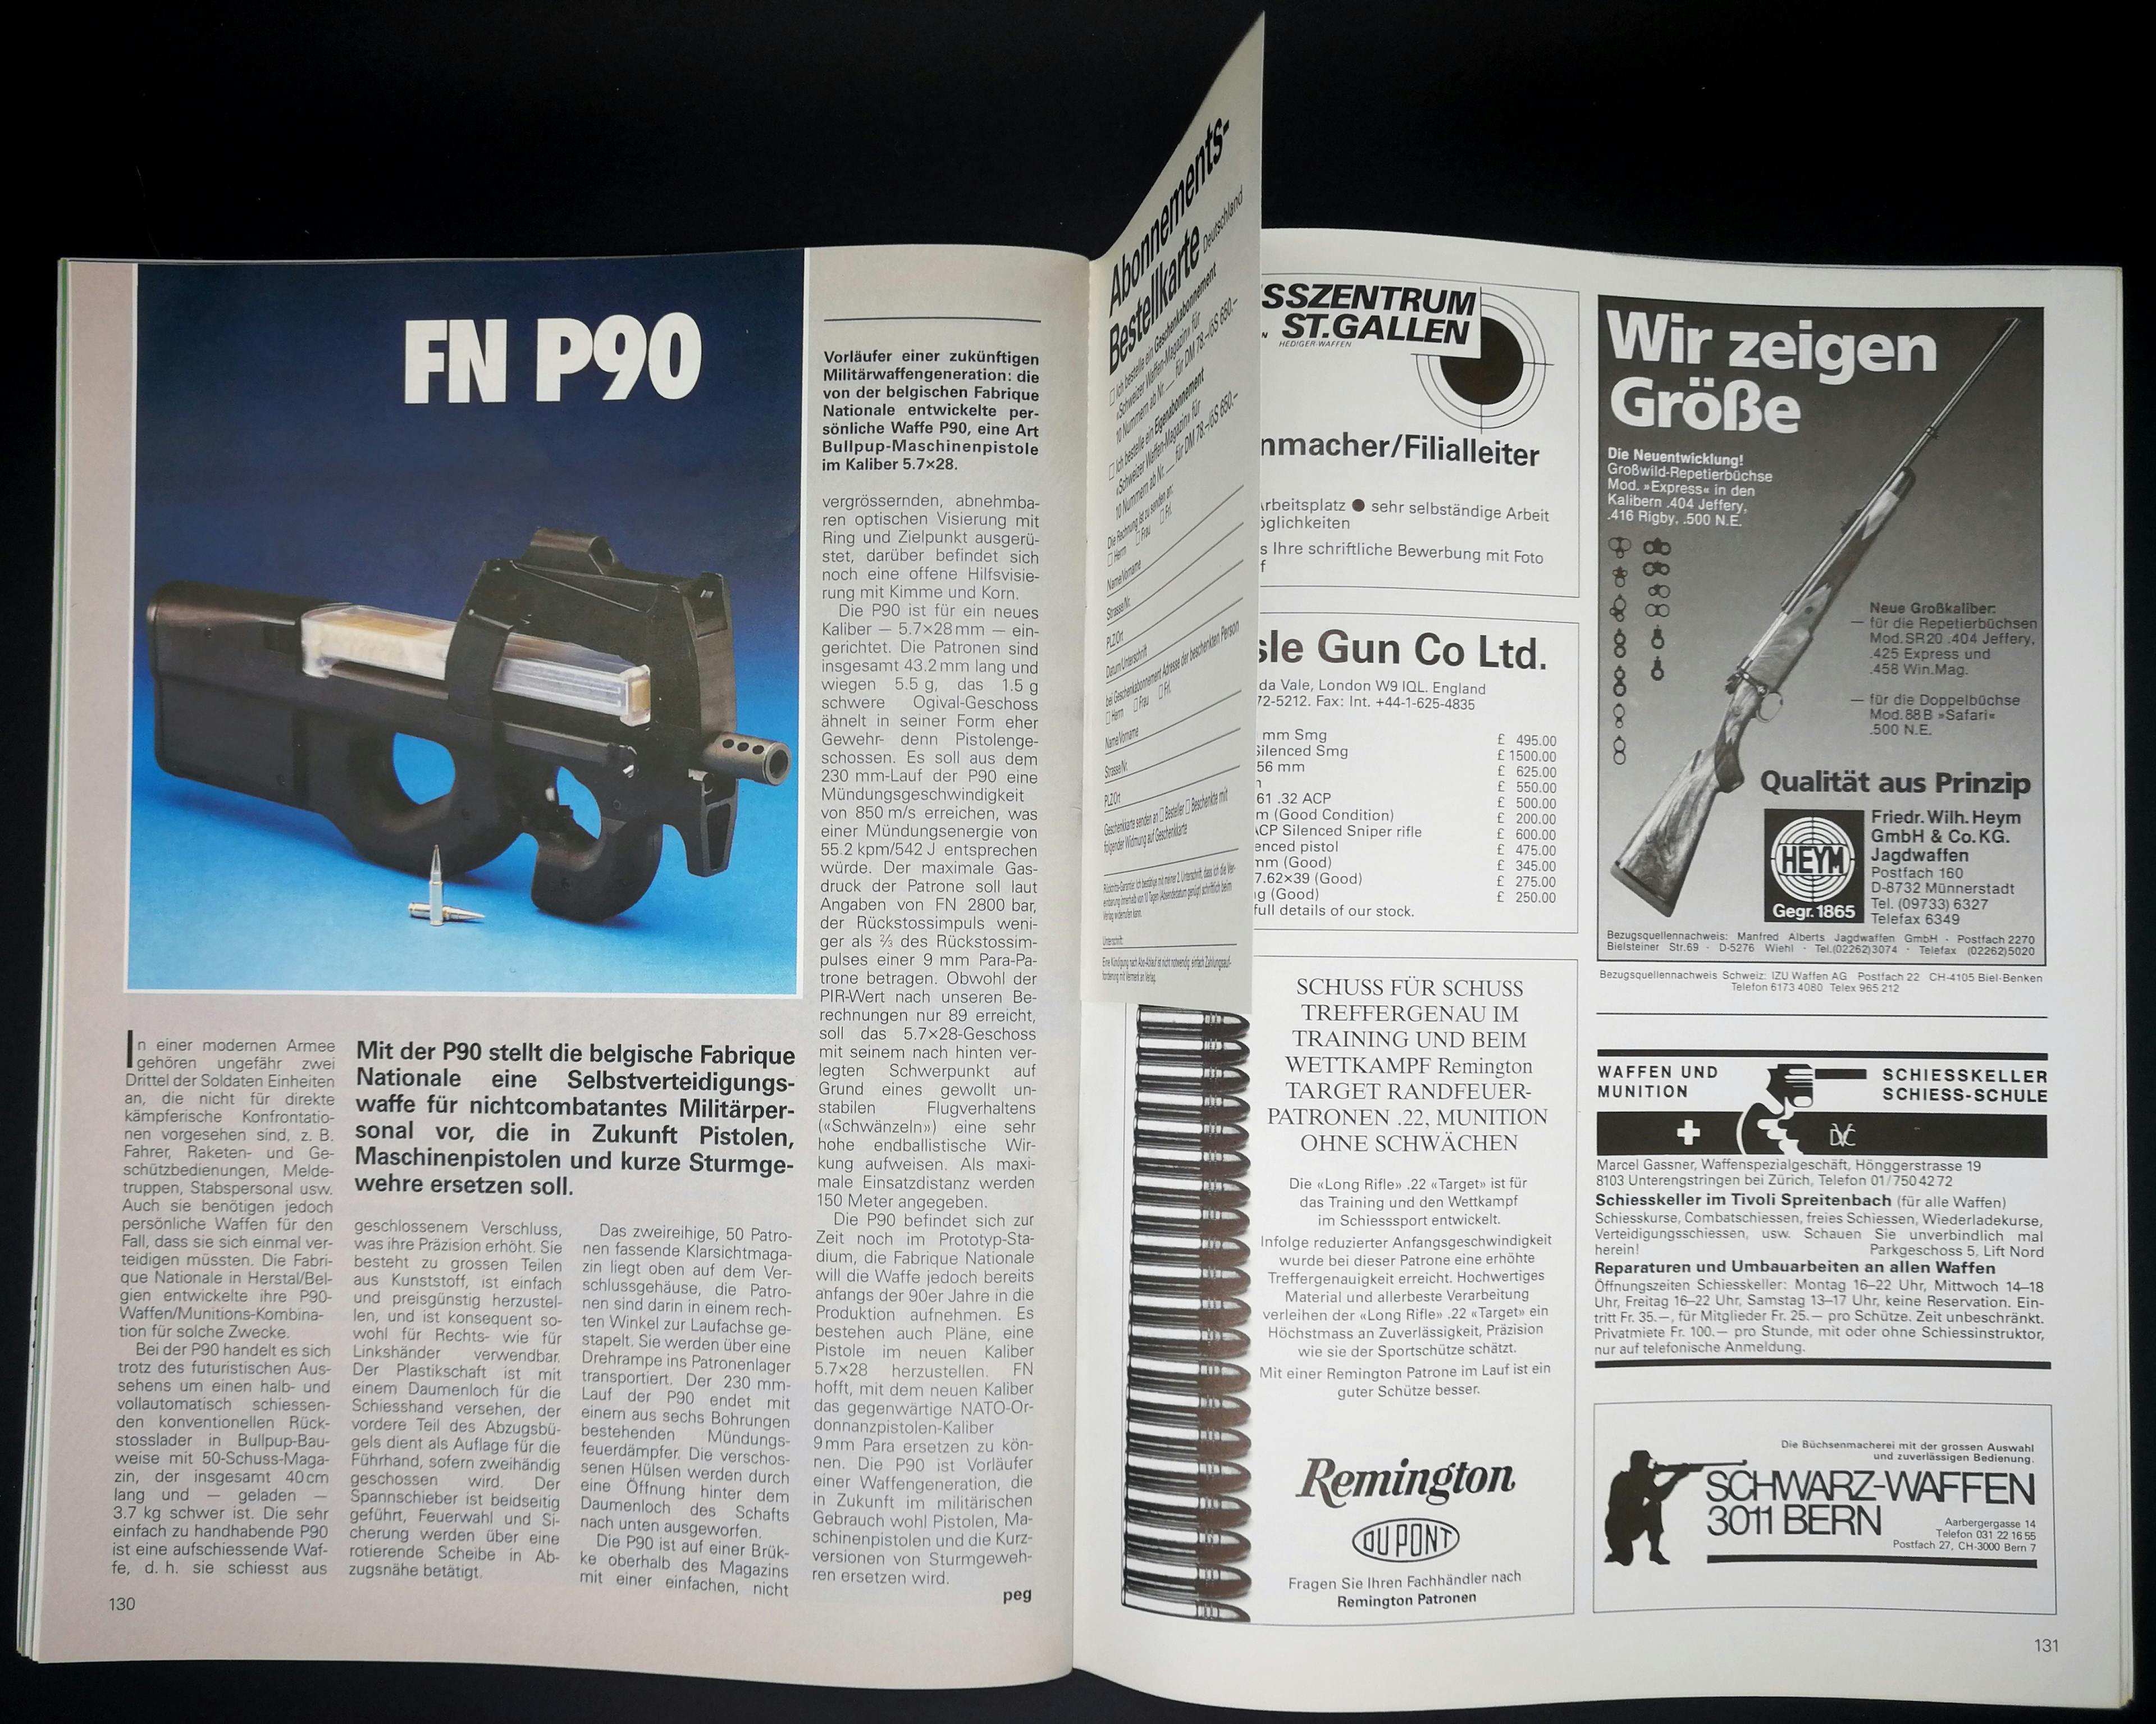 Die legendäre FN P90 in einem erstaunlich kurzen Artikel.